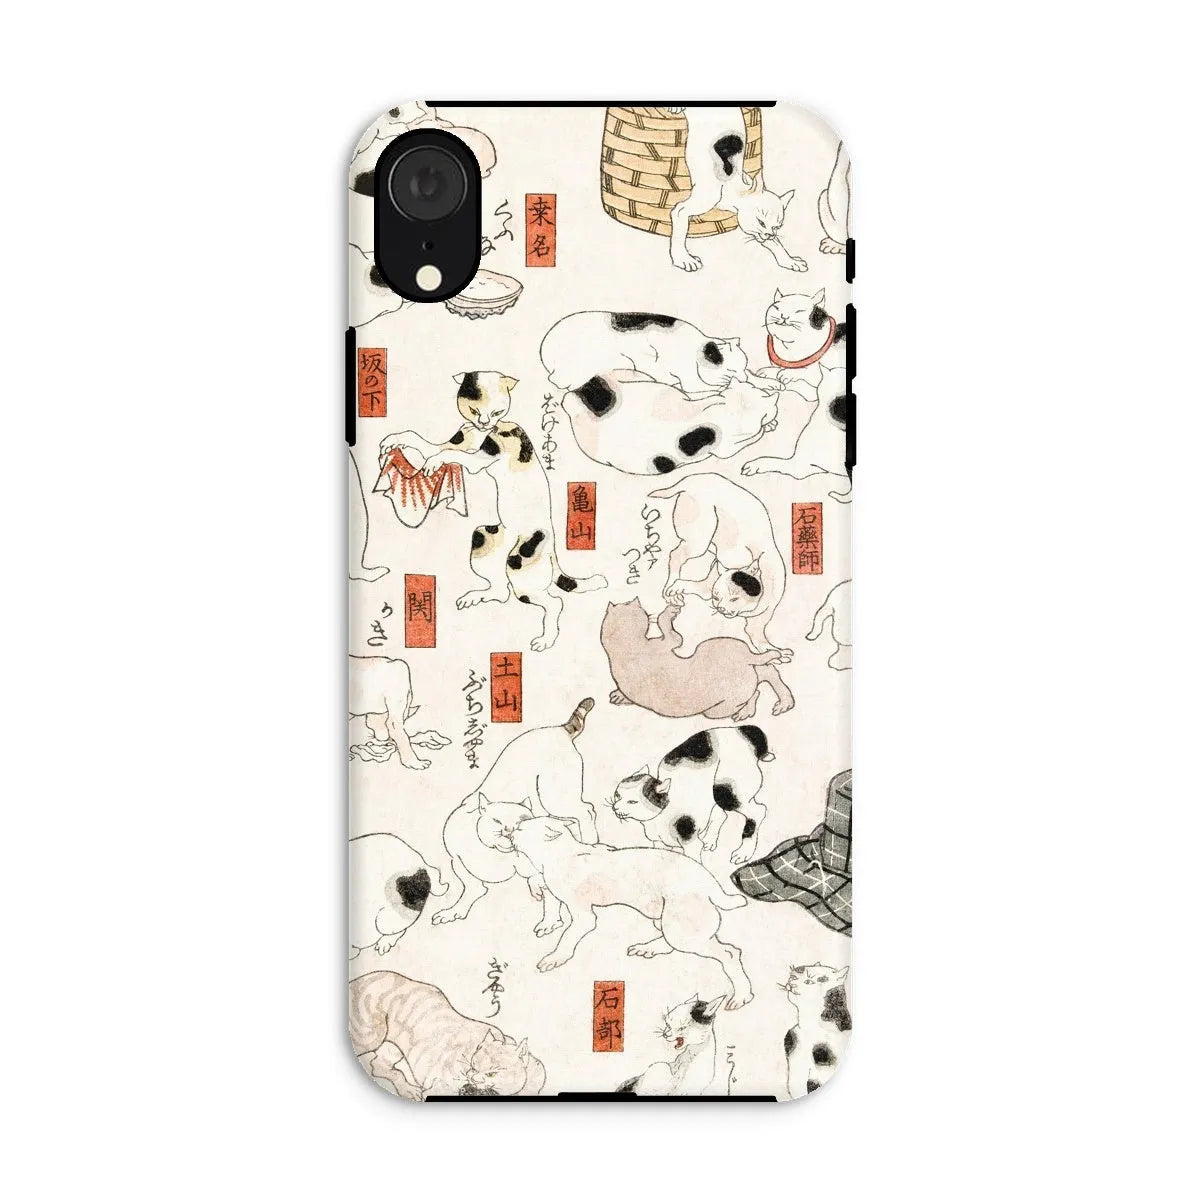 Japanese Cat Aesthetic Art Phone Case - Utagawa Kuniyoshi - Iphone Xr / Matte - Mobile Phone Cases - Aesthetic Art